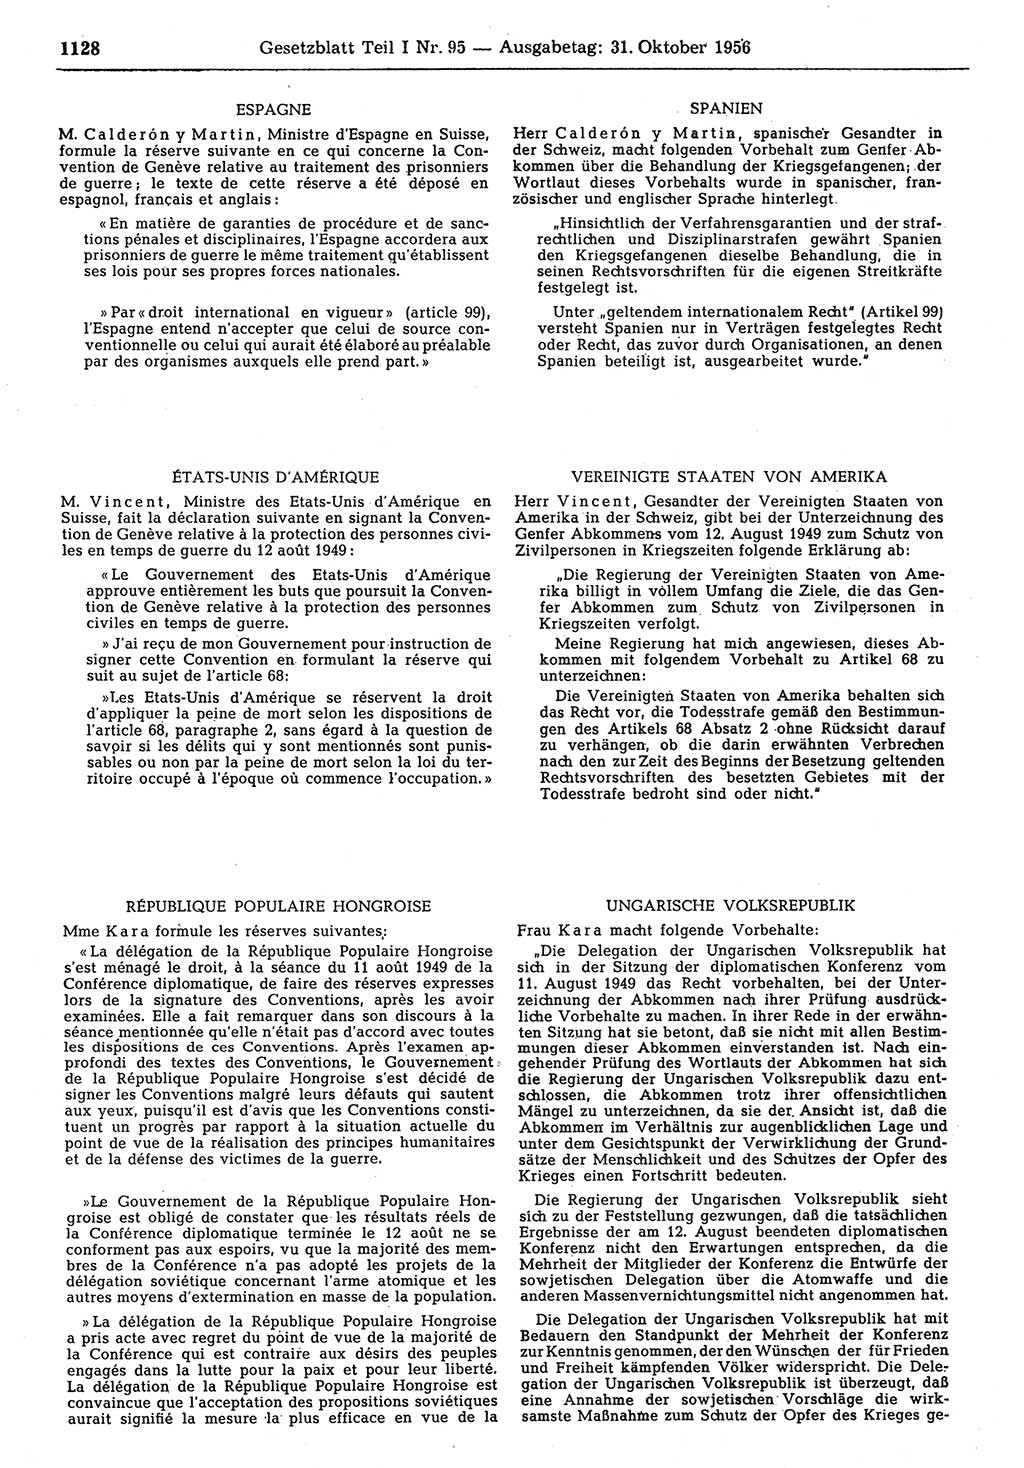 Gesetzblatt (GBl.) der Deutschen Demokratischen Republik (DDR) Teil Ⅰ 1956, Seite 1128 (GBl. DDR Ⅰ 1956, S. 1128)